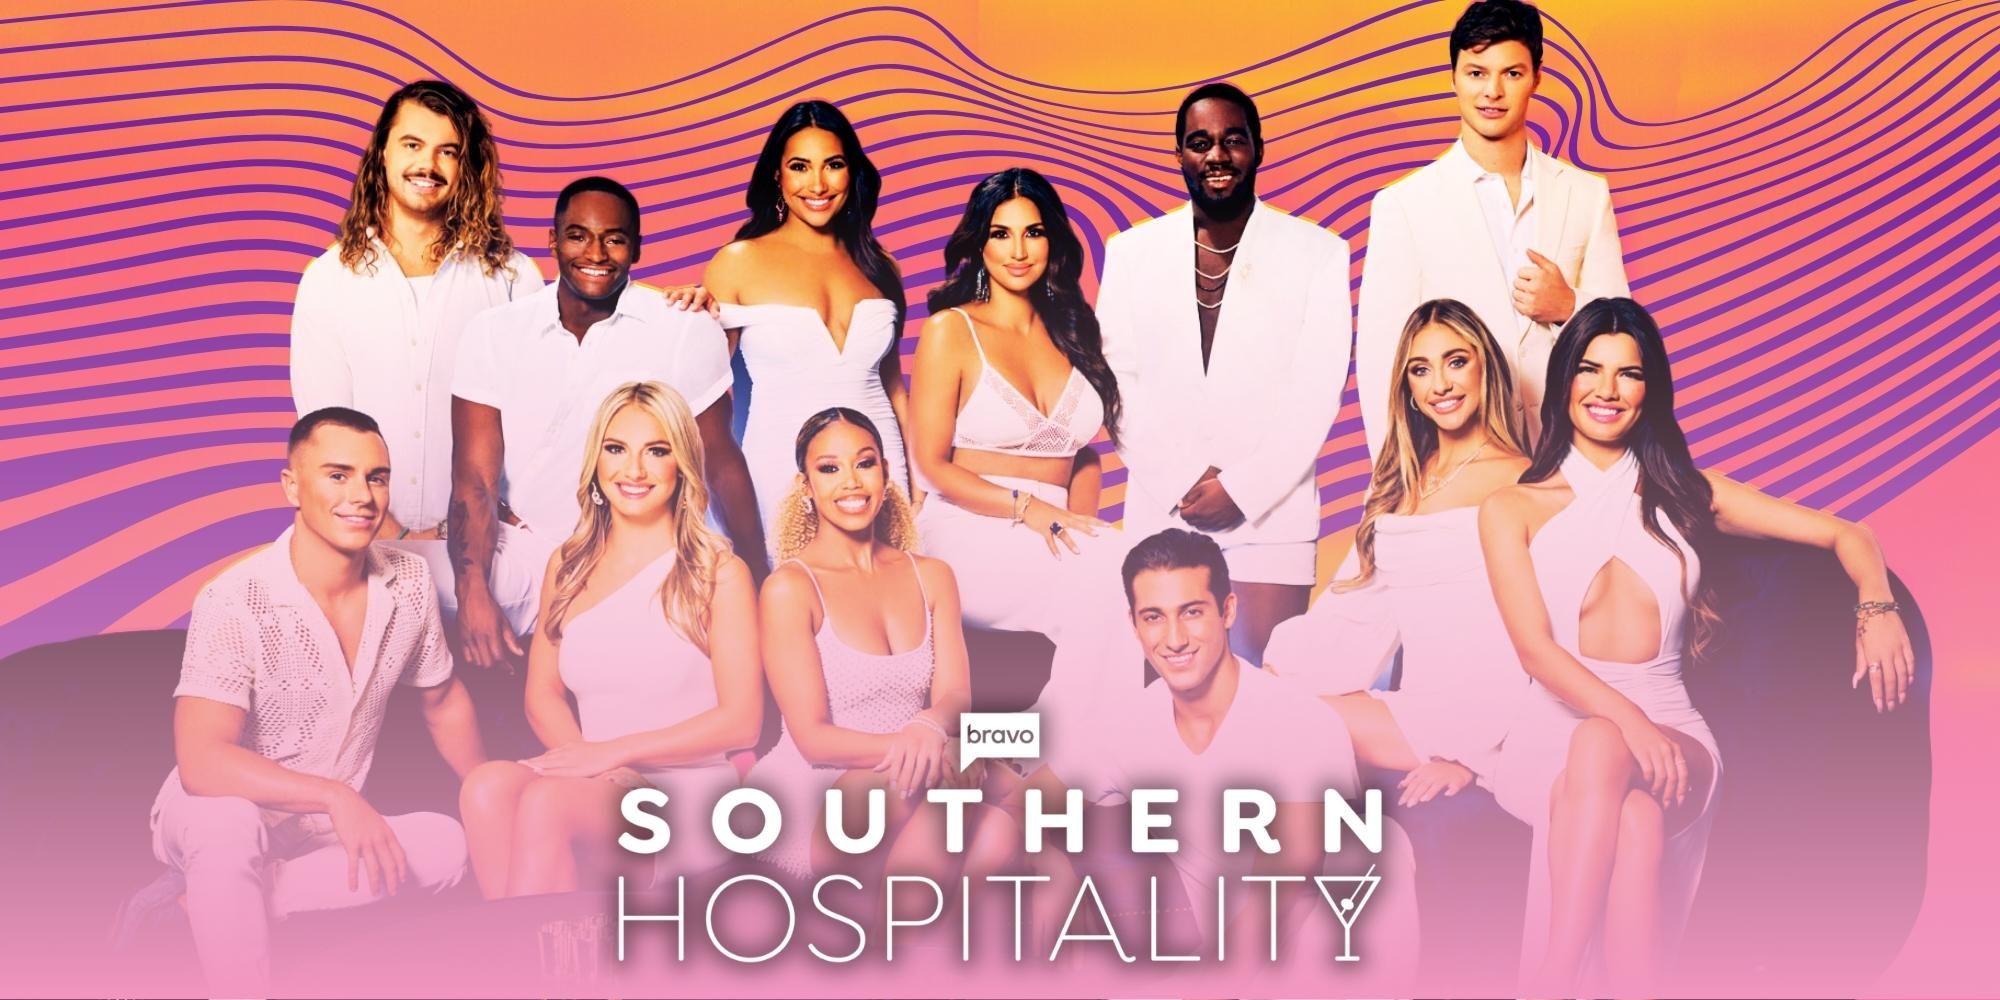 Temporada 2 de Southern Hospitality: noticias, fecha de lanzamiento, reparto, tráiler y más